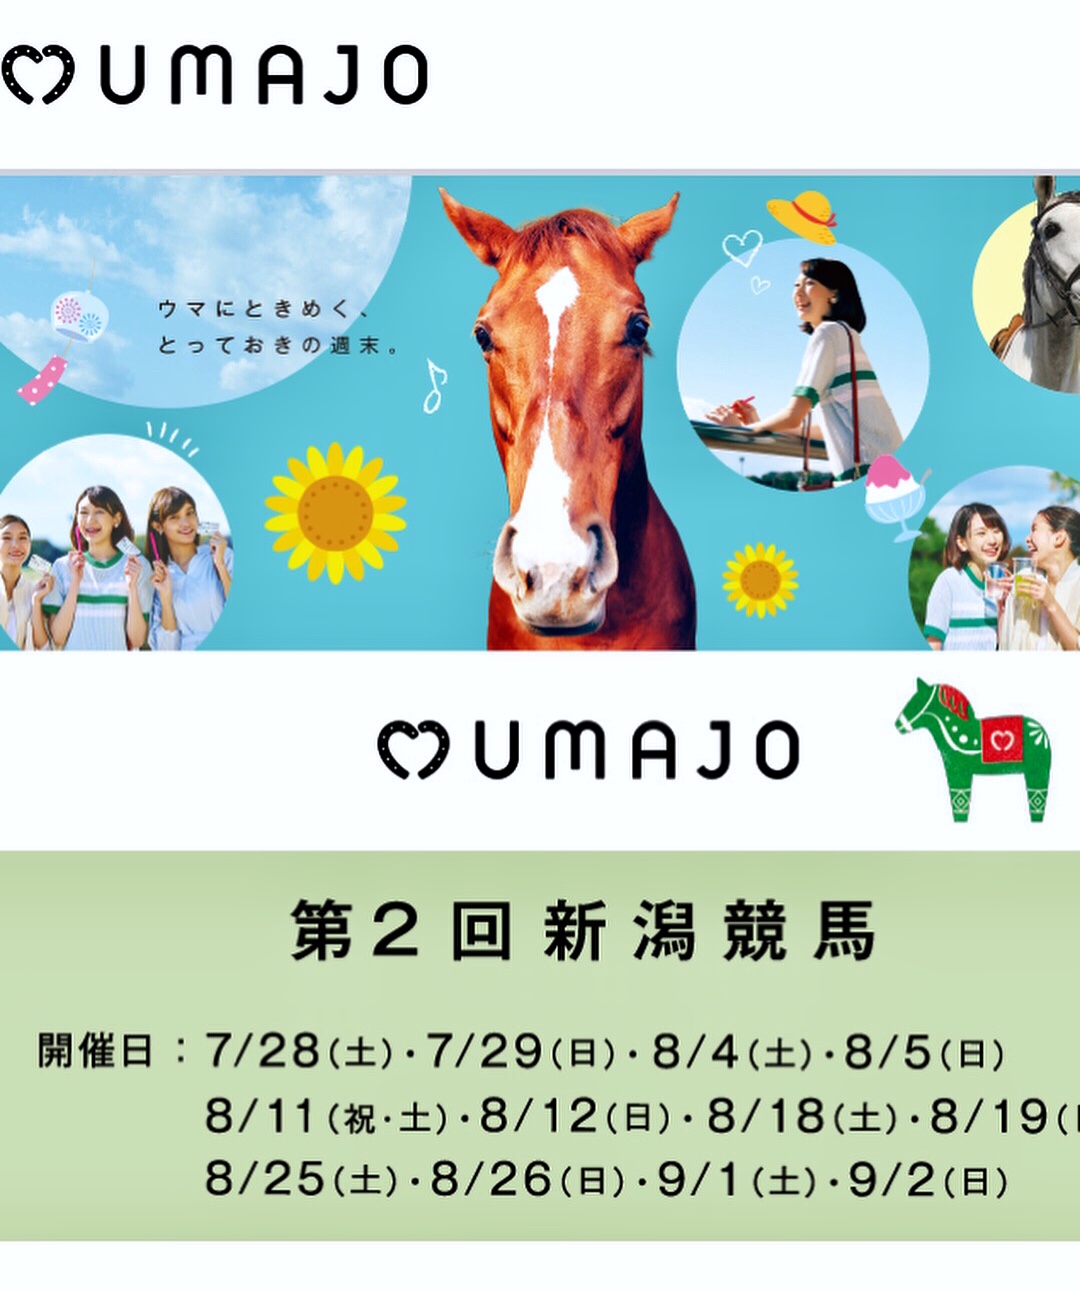 8月4.5日は、新潟競馬場内の女性専用CAFE『UMAJO』で…